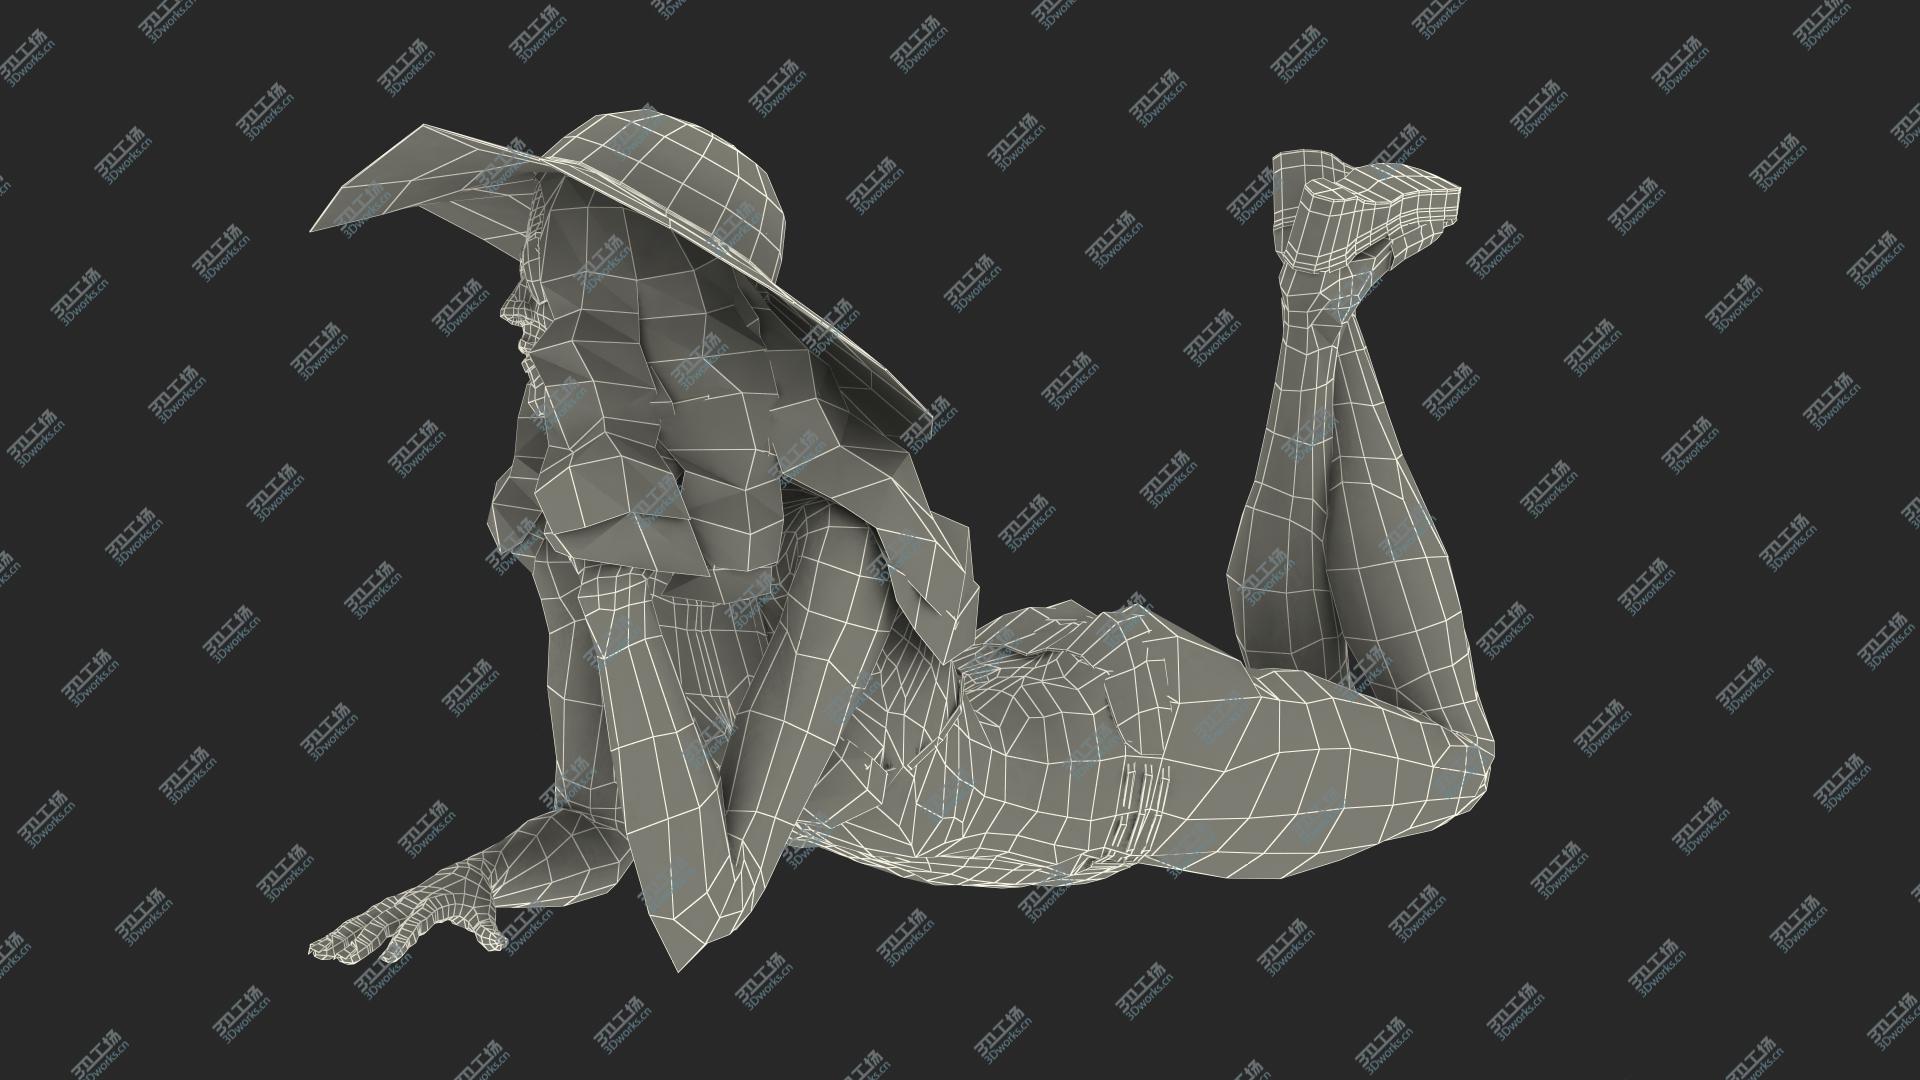 images/goods_img/20210313/3D Bikini Girl Lying Pose model/4.jpg